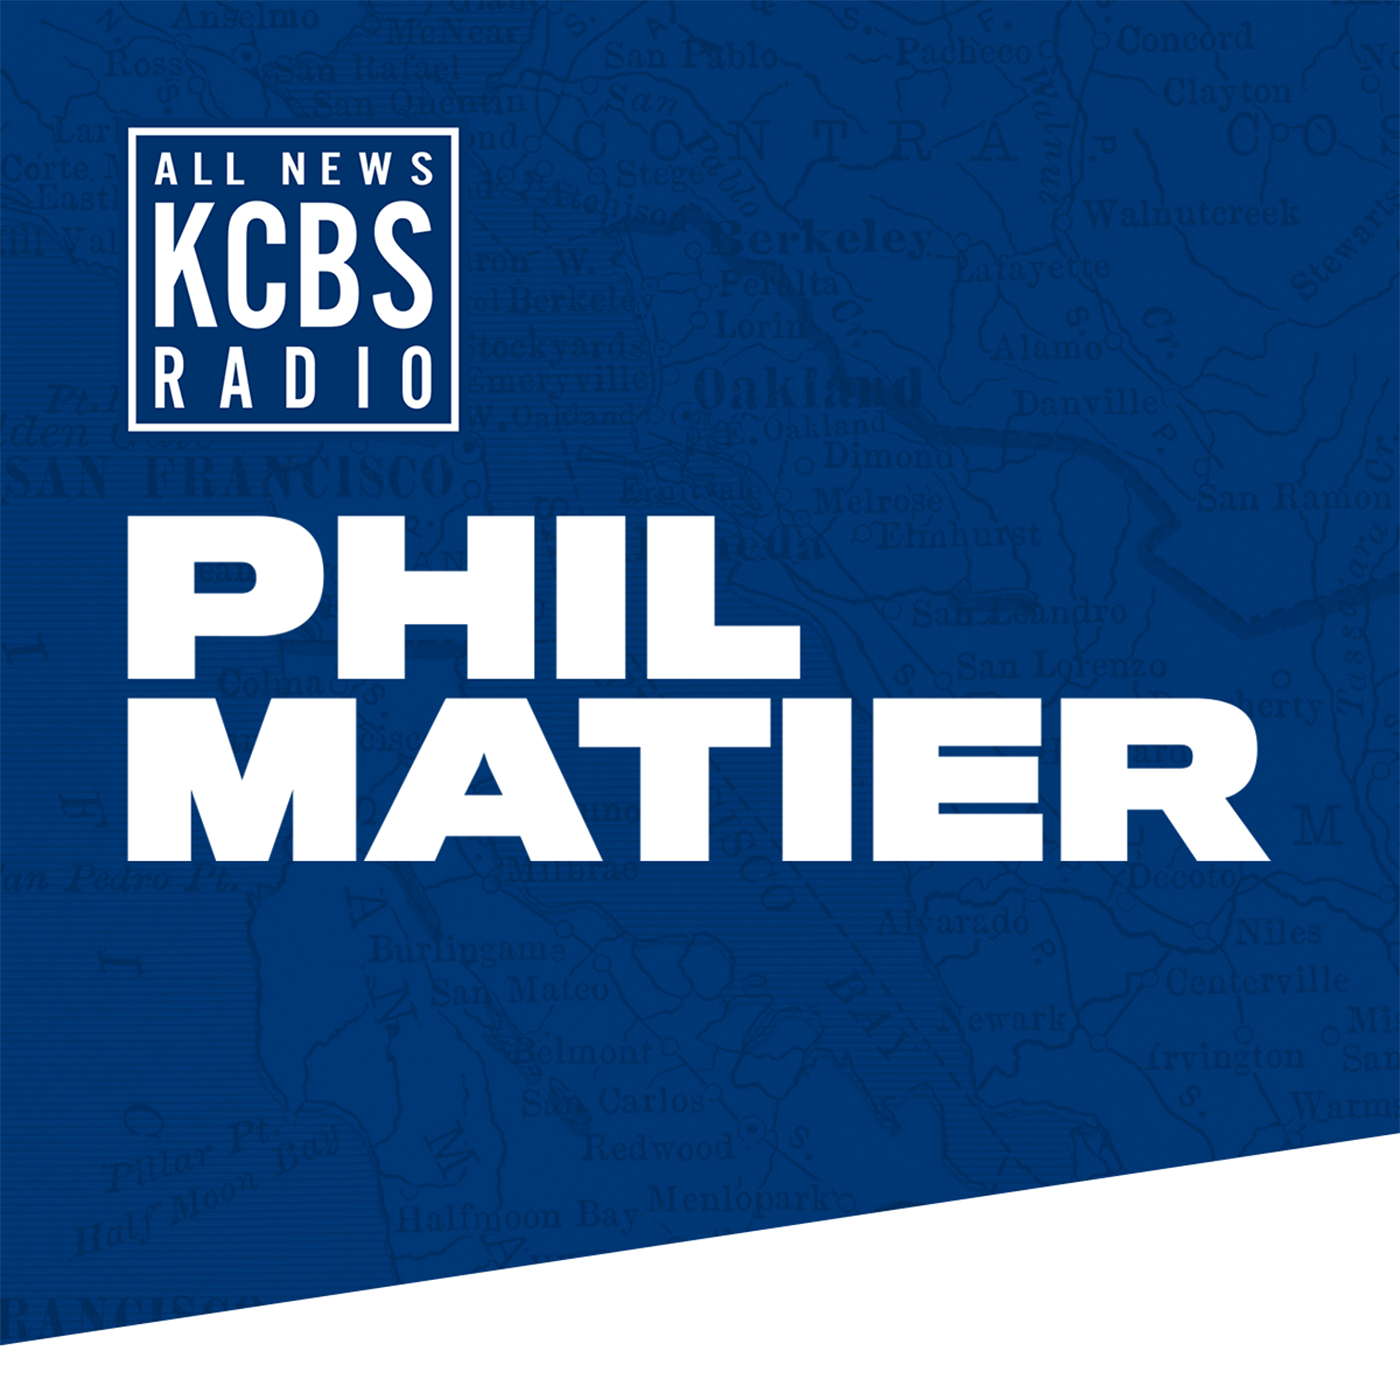 Phil Matier:  Former Giants Player Tweets